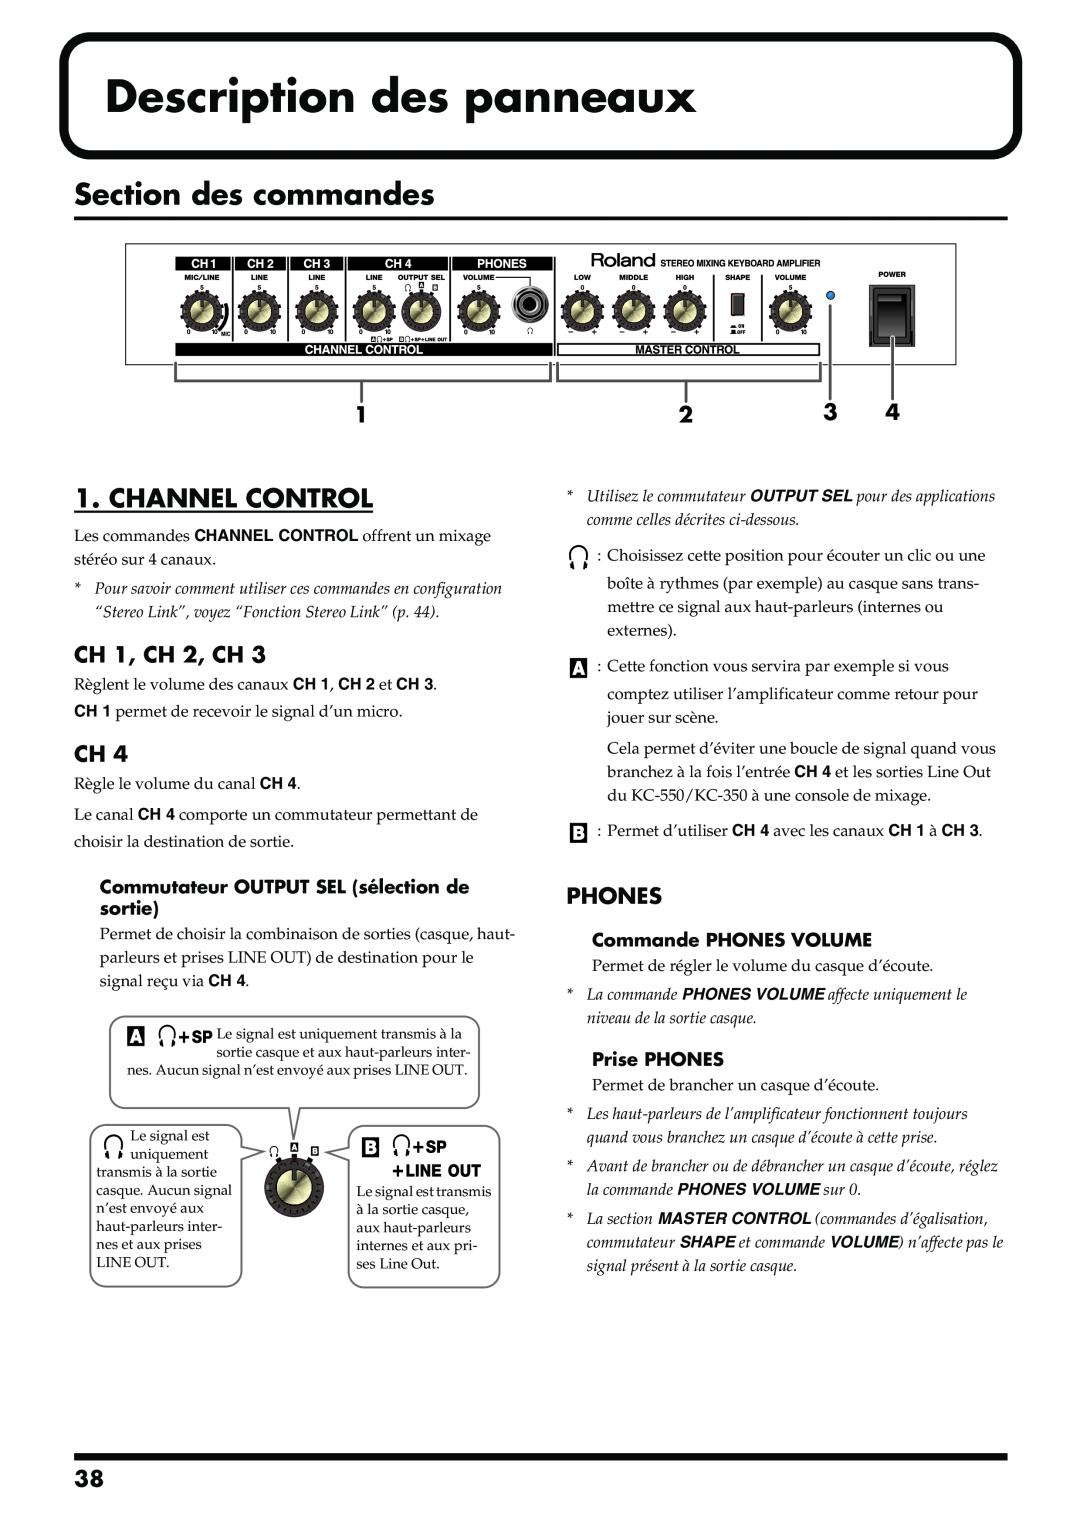 Roland KC-350, KC-550 manual Description des panneaux, Section des commandes, Channel Control 